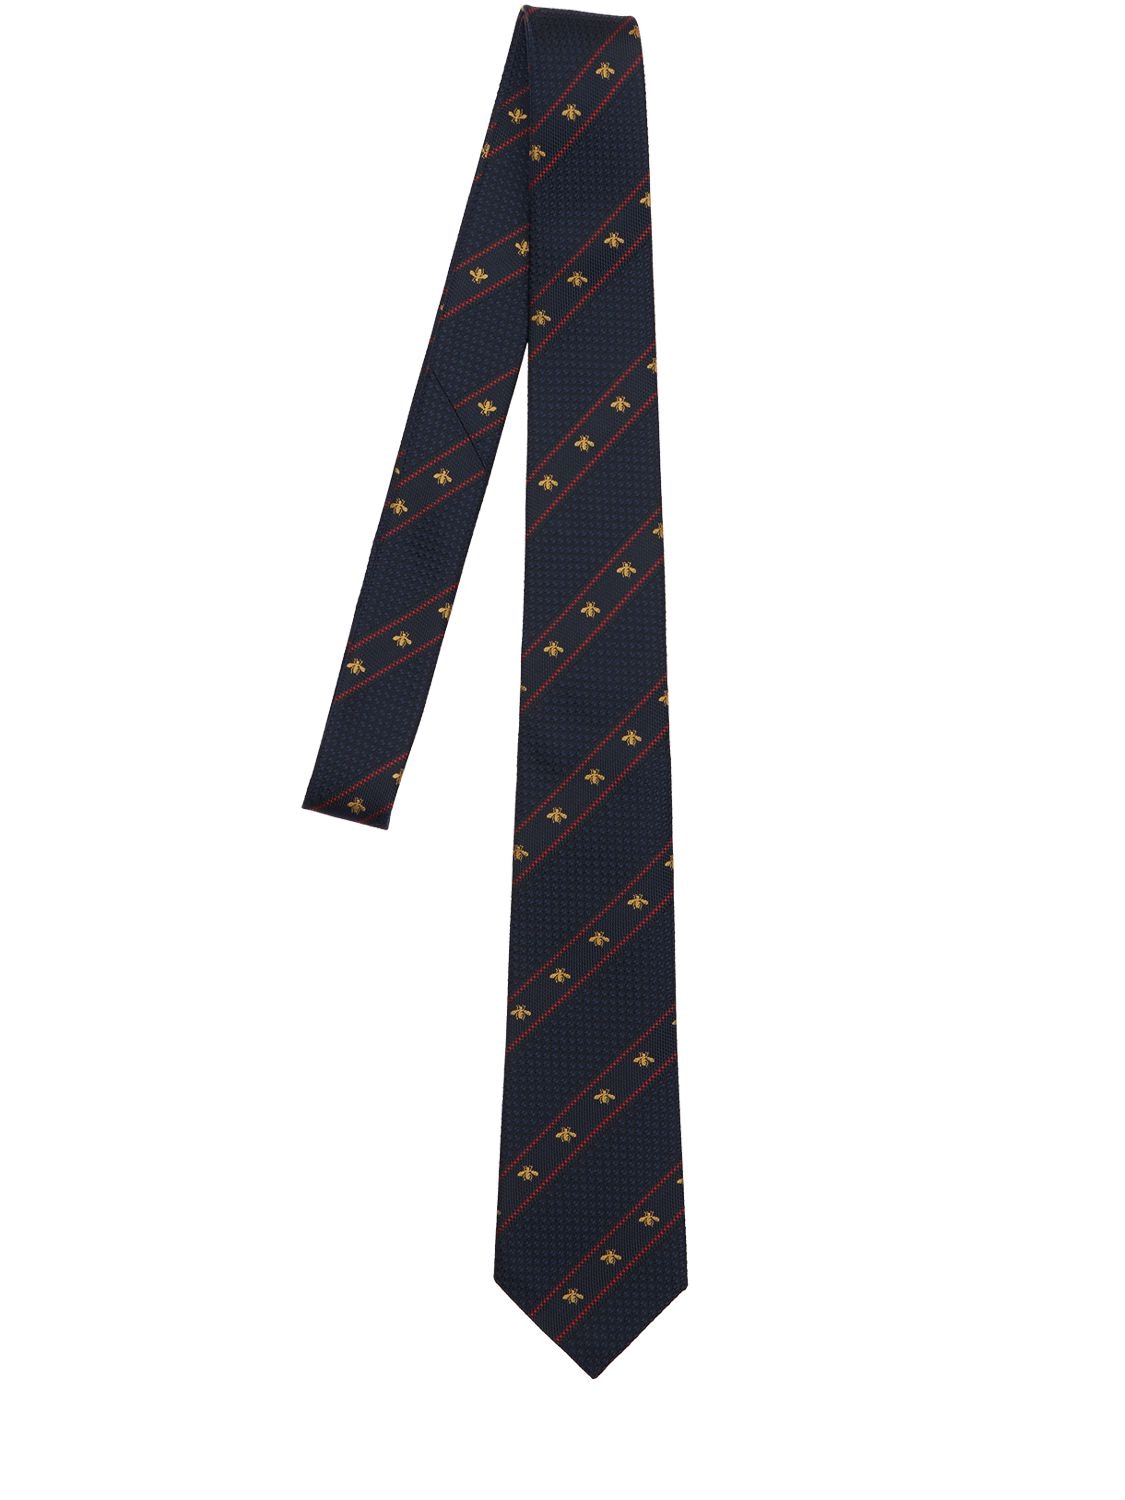 Cravatta In Seta Con Web 7cm